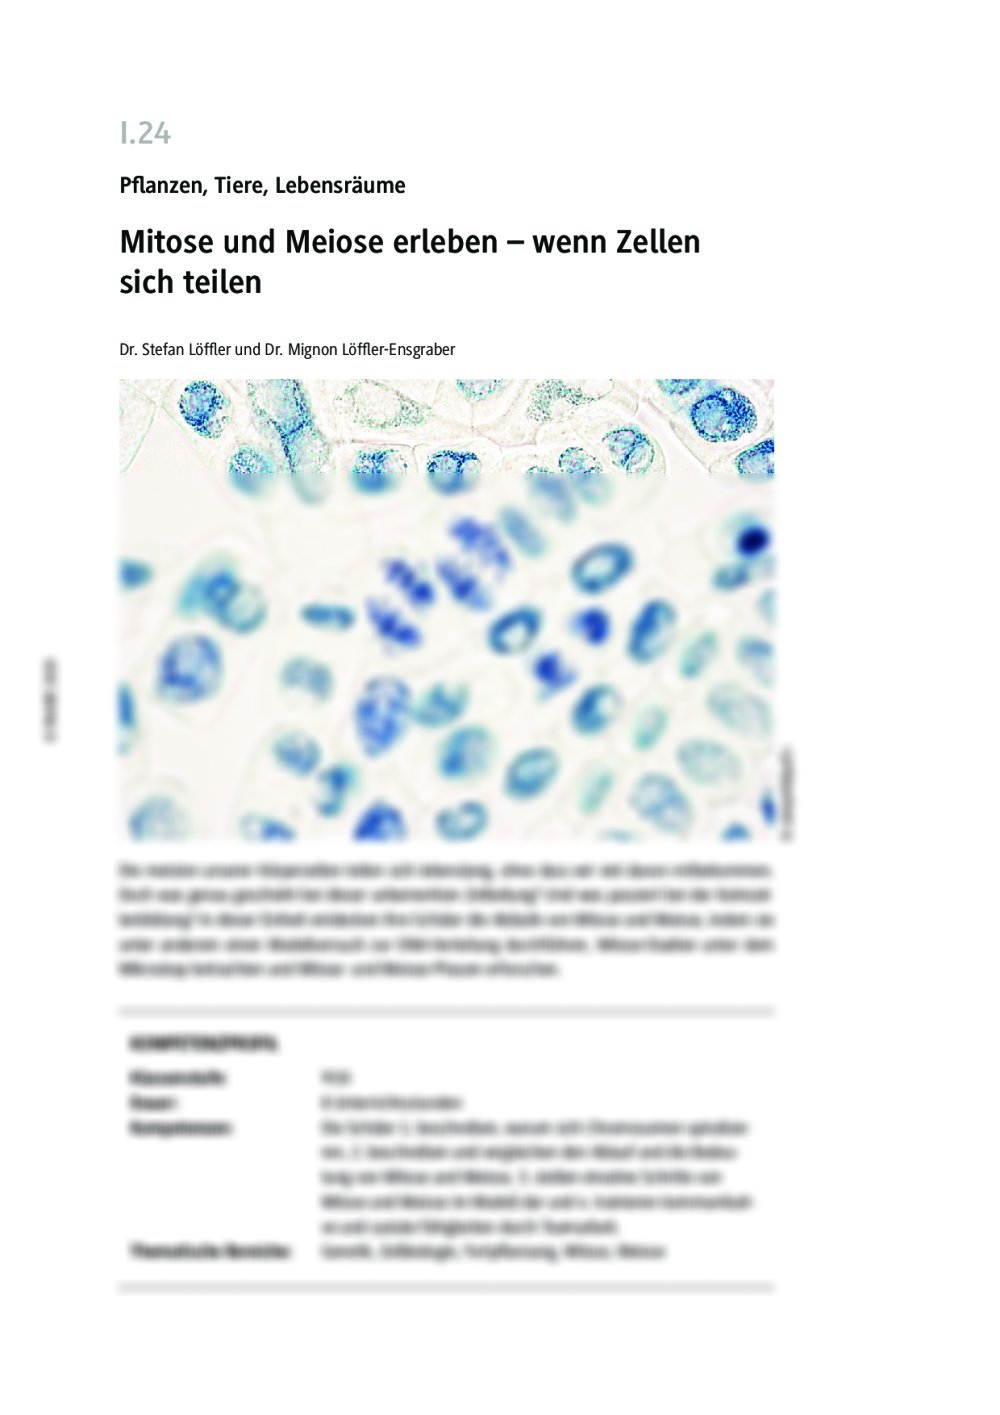 Mitose und Meiose - Phasen und Unterschiede - Seite 1